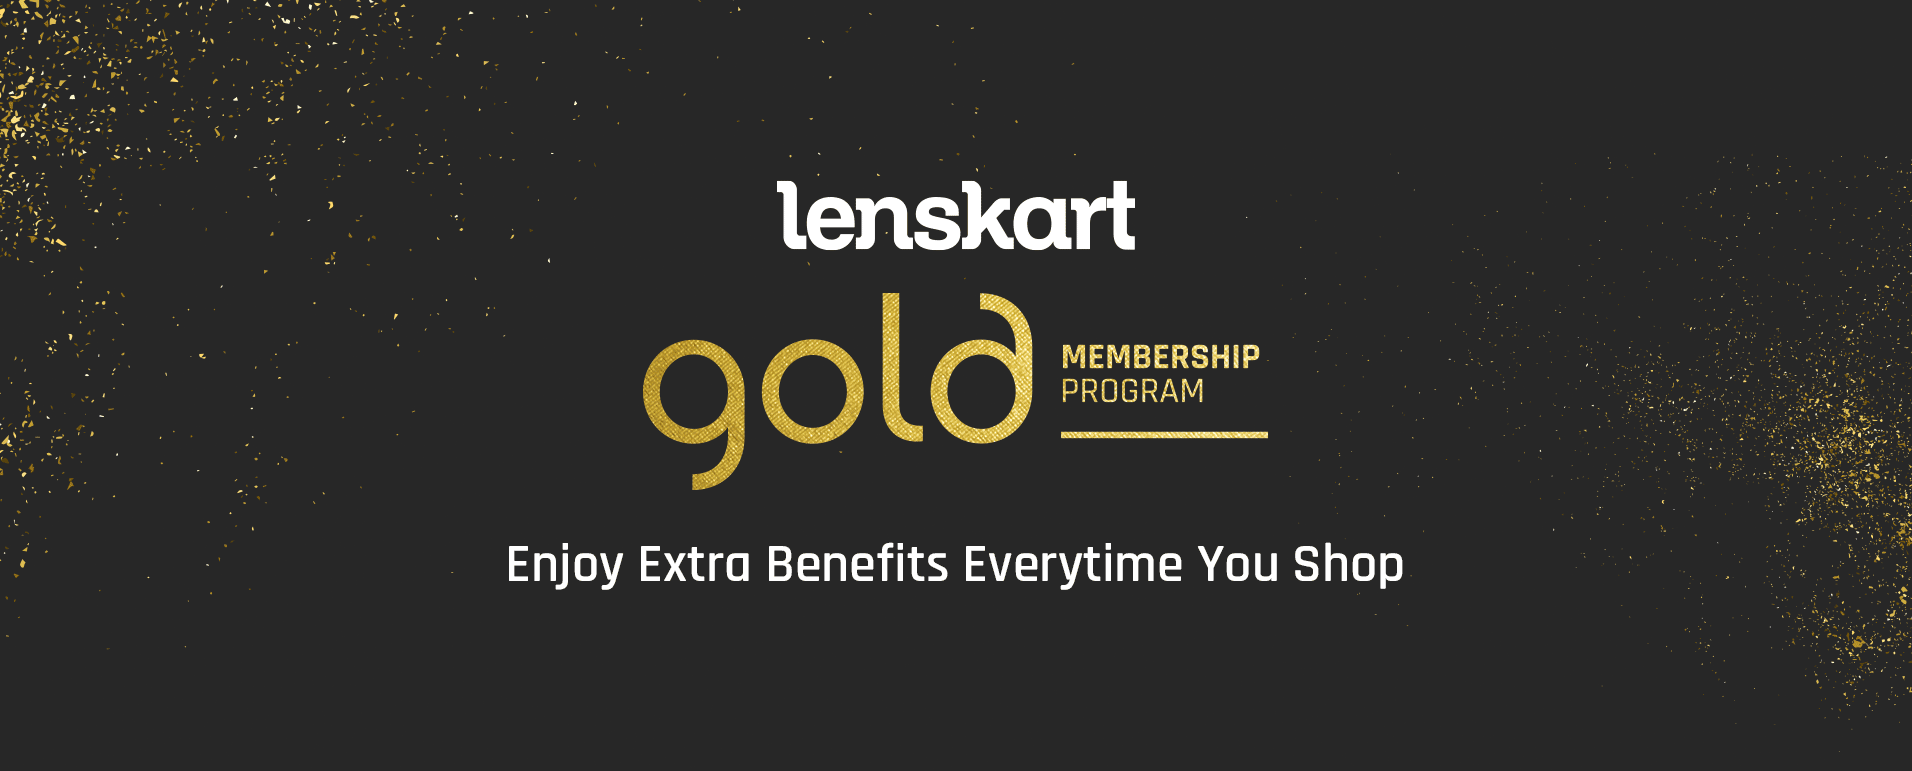 Lenskart Gold Membership